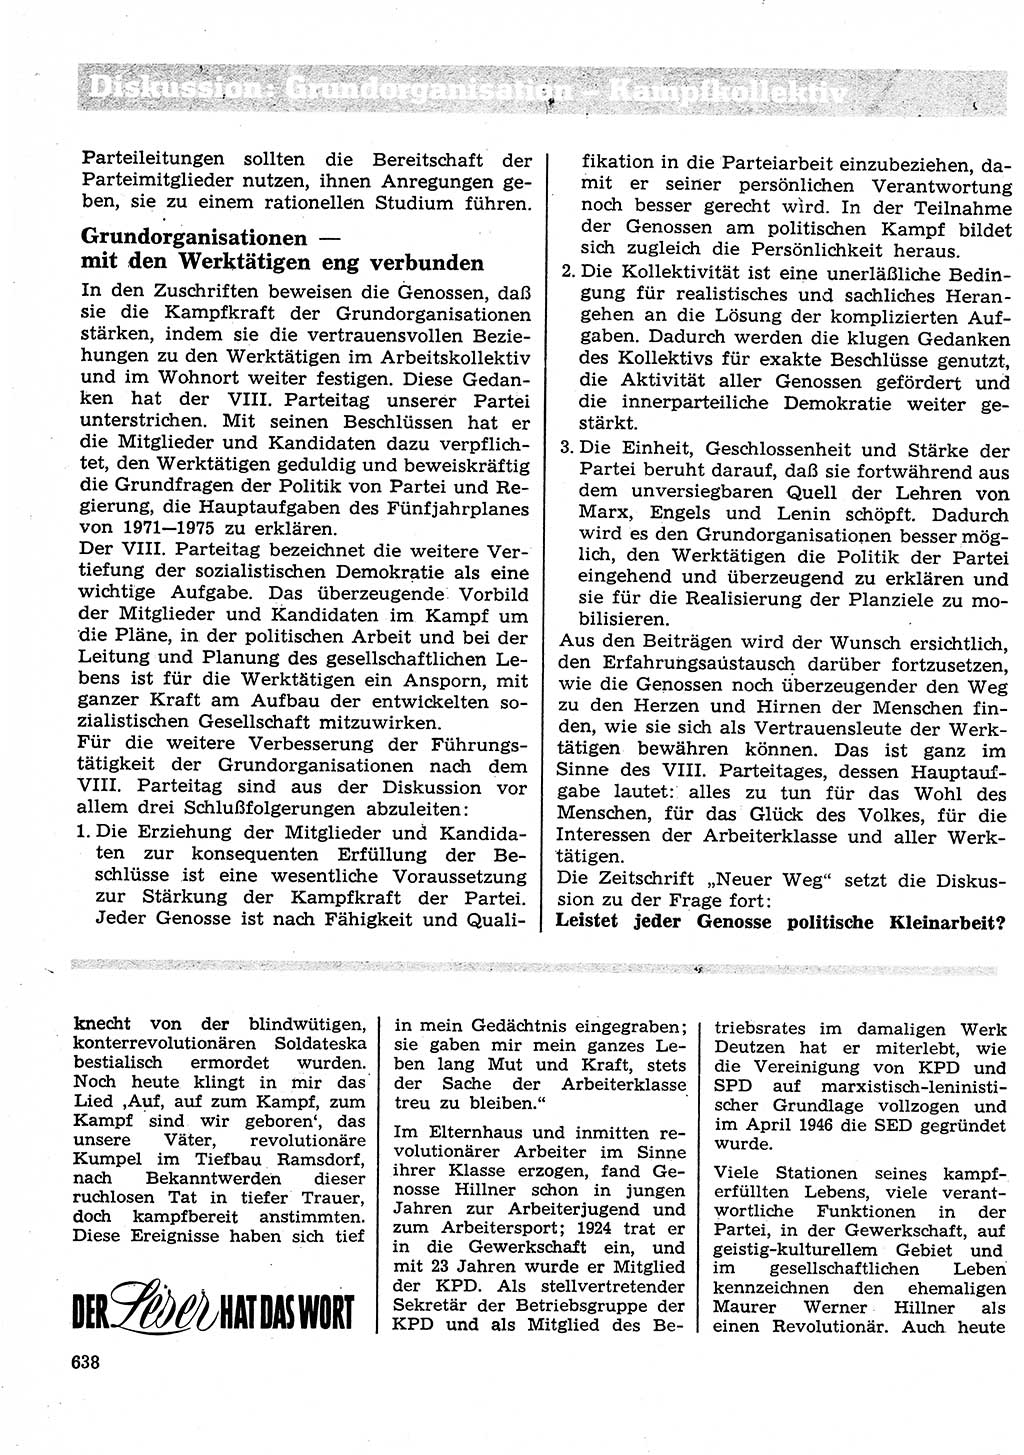 Neuer Weg (NW), Organ des Zentralkomitees (ZK) der SED (Sozialistische Einheitspartei Deutschlands) für Fragen des Parteilebens, 26. Jahrgang [Deutsche Demokratische Republik (DDR)] 1971, Seite 638 (NW ZK SED DDR 1971, S. 638)